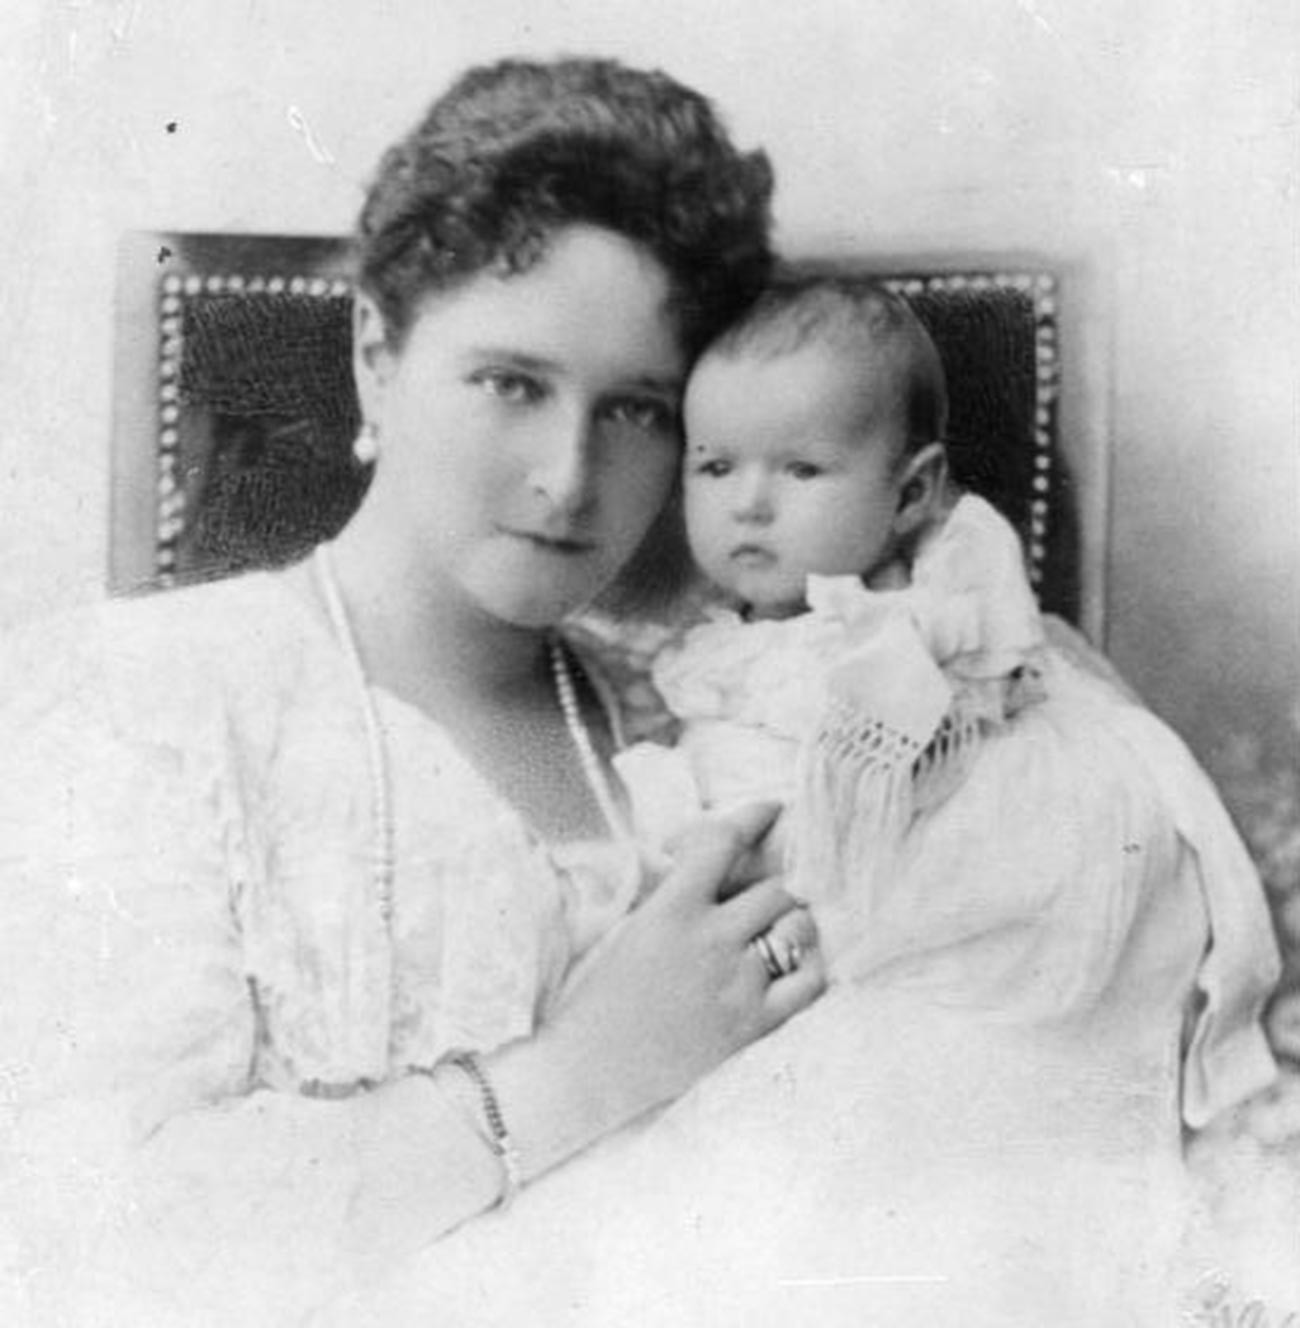 L'imperatrice Aleksandra Fyodorovna, moglie dello zar Nicola II, con la figlia Anastasia